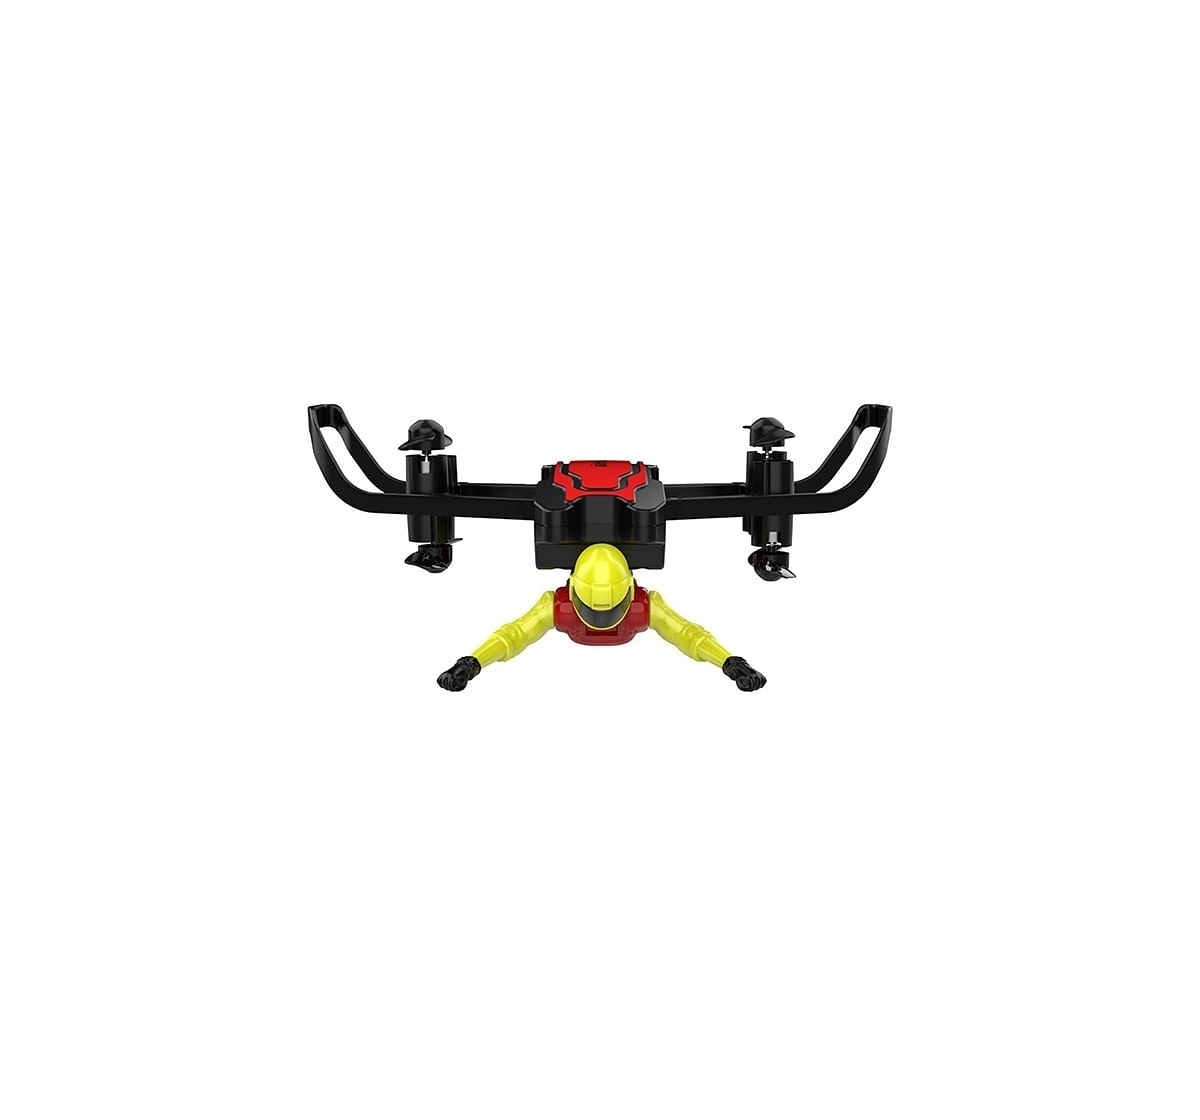 Sirius Toys Udirc U65 Flying Man  Drone Remote Control Toys for Kids age 14Y+ 